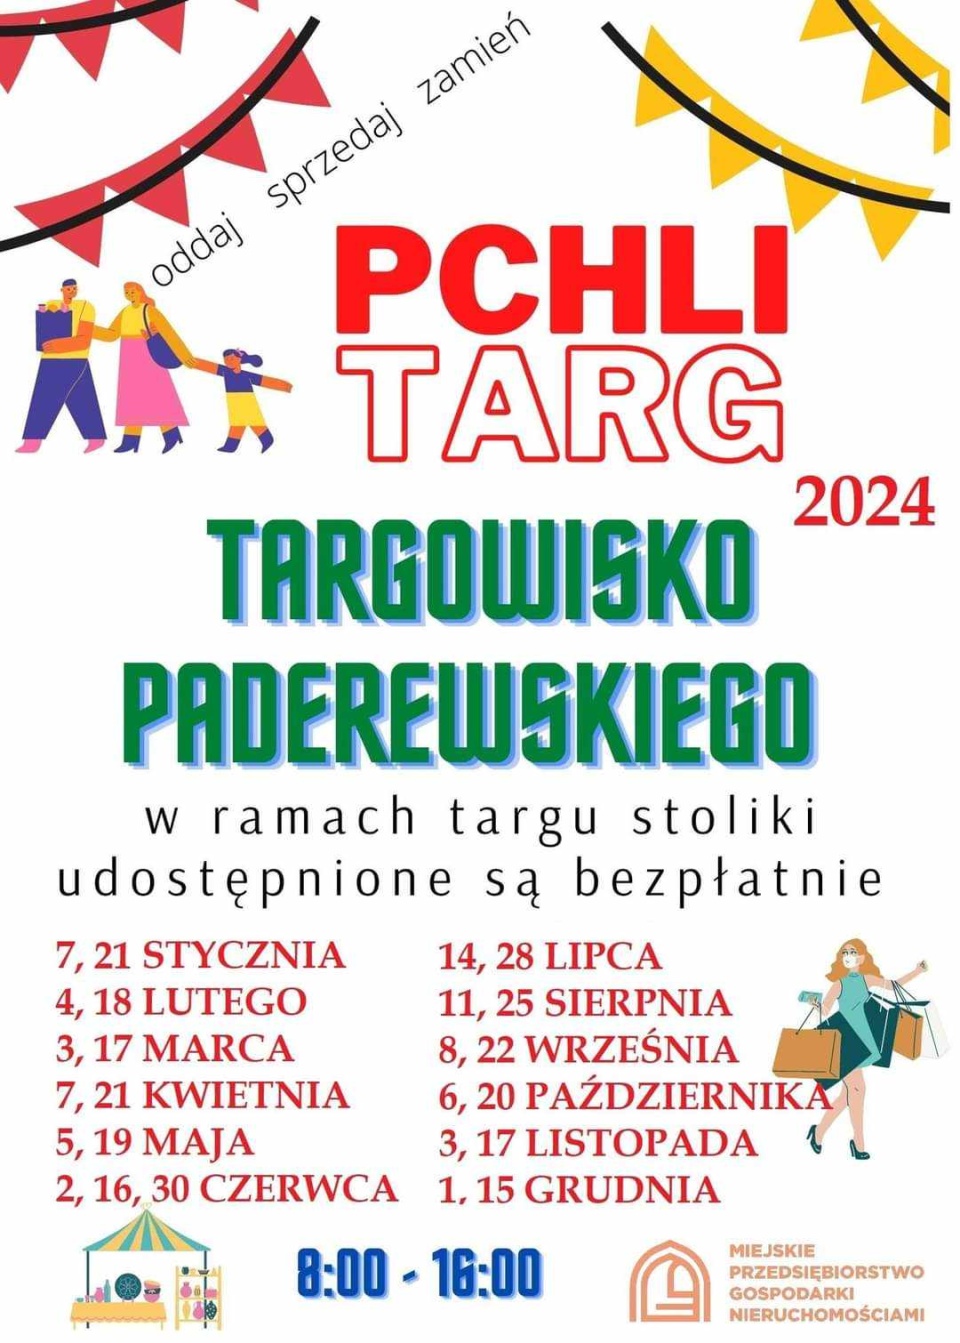 Zestawienie terminów pchlego targu w Grudziądzu na 2024 rok/fot: grudziadz.pl